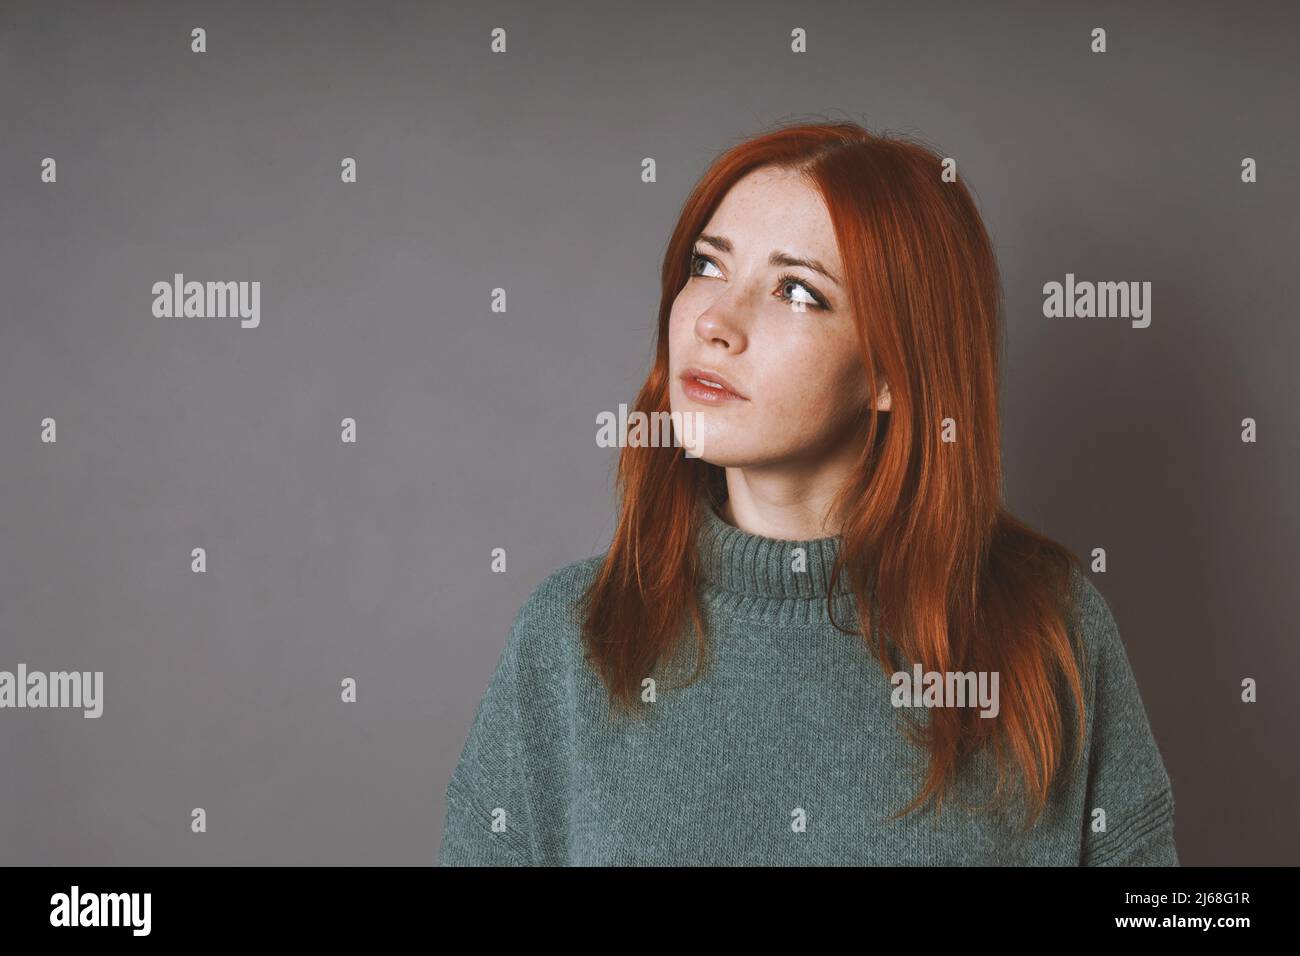 donna pensierosa in maglione turleneck sta osservando su pensare o progettando Foto Stock